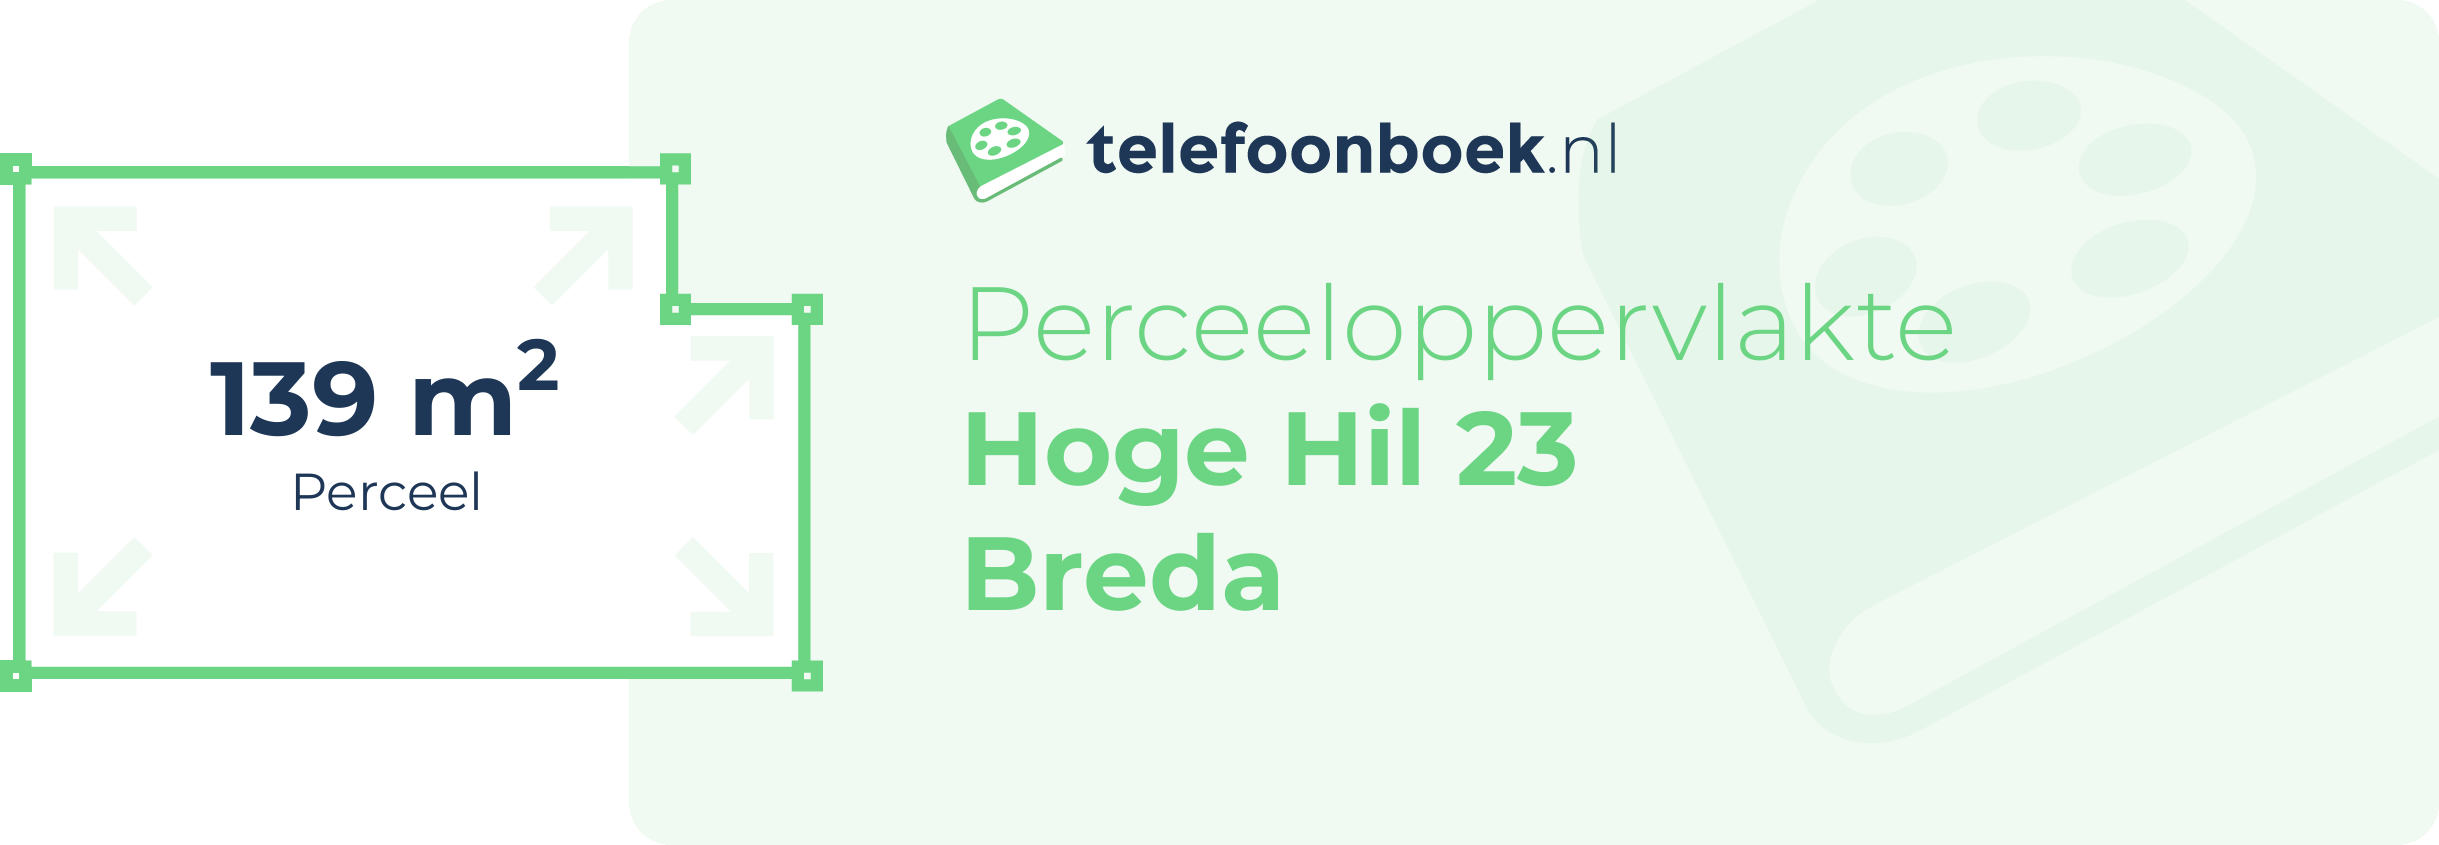 Perceeloppervlakte Hoge Hil 23 Breda